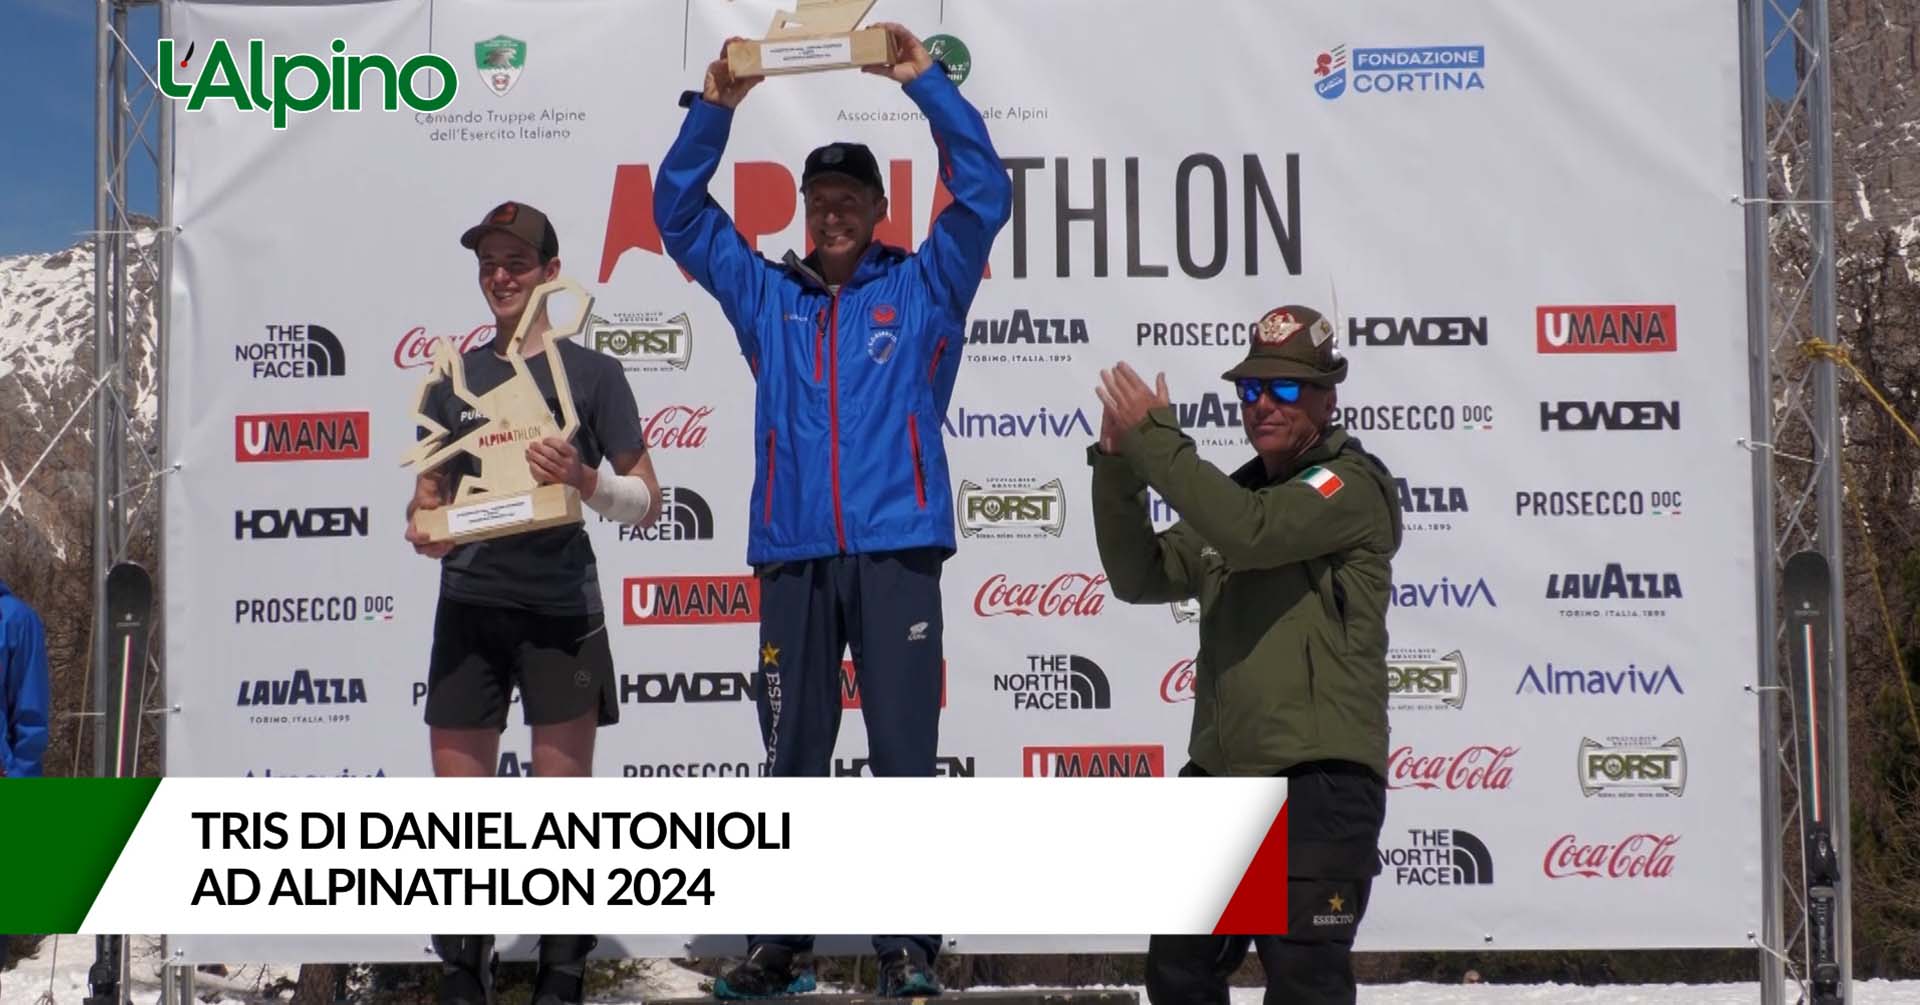 L'Alpino - Tris di Daniel Antonioli ad Alpinathlon 2024